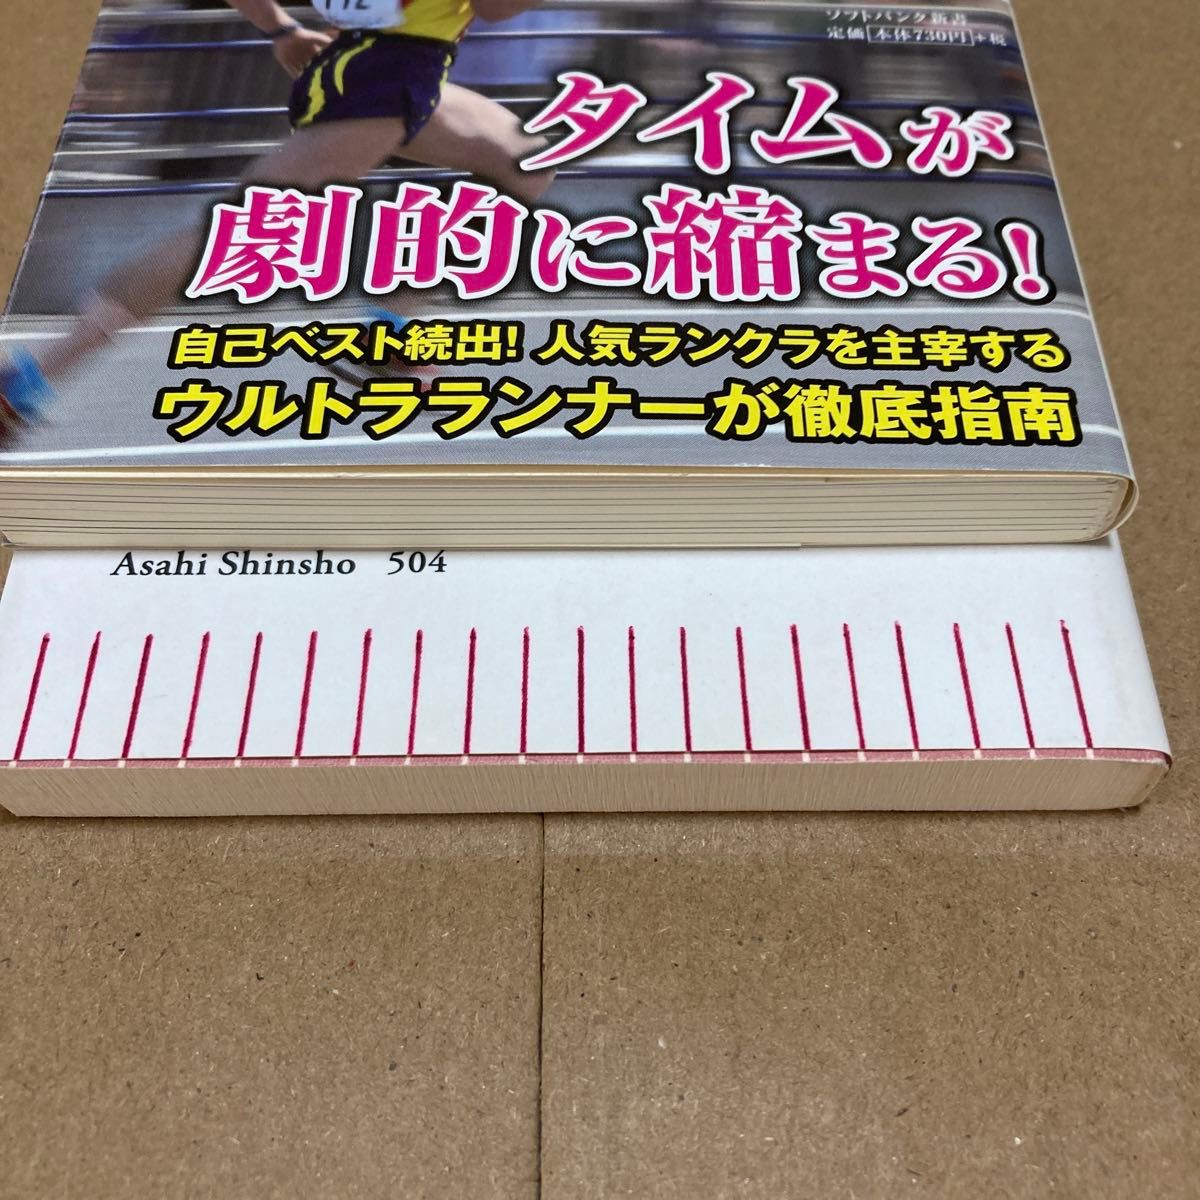 岩本 能史 新書2冊セット　 非常識マラソンマネジメント 型破りマラソン攻略法